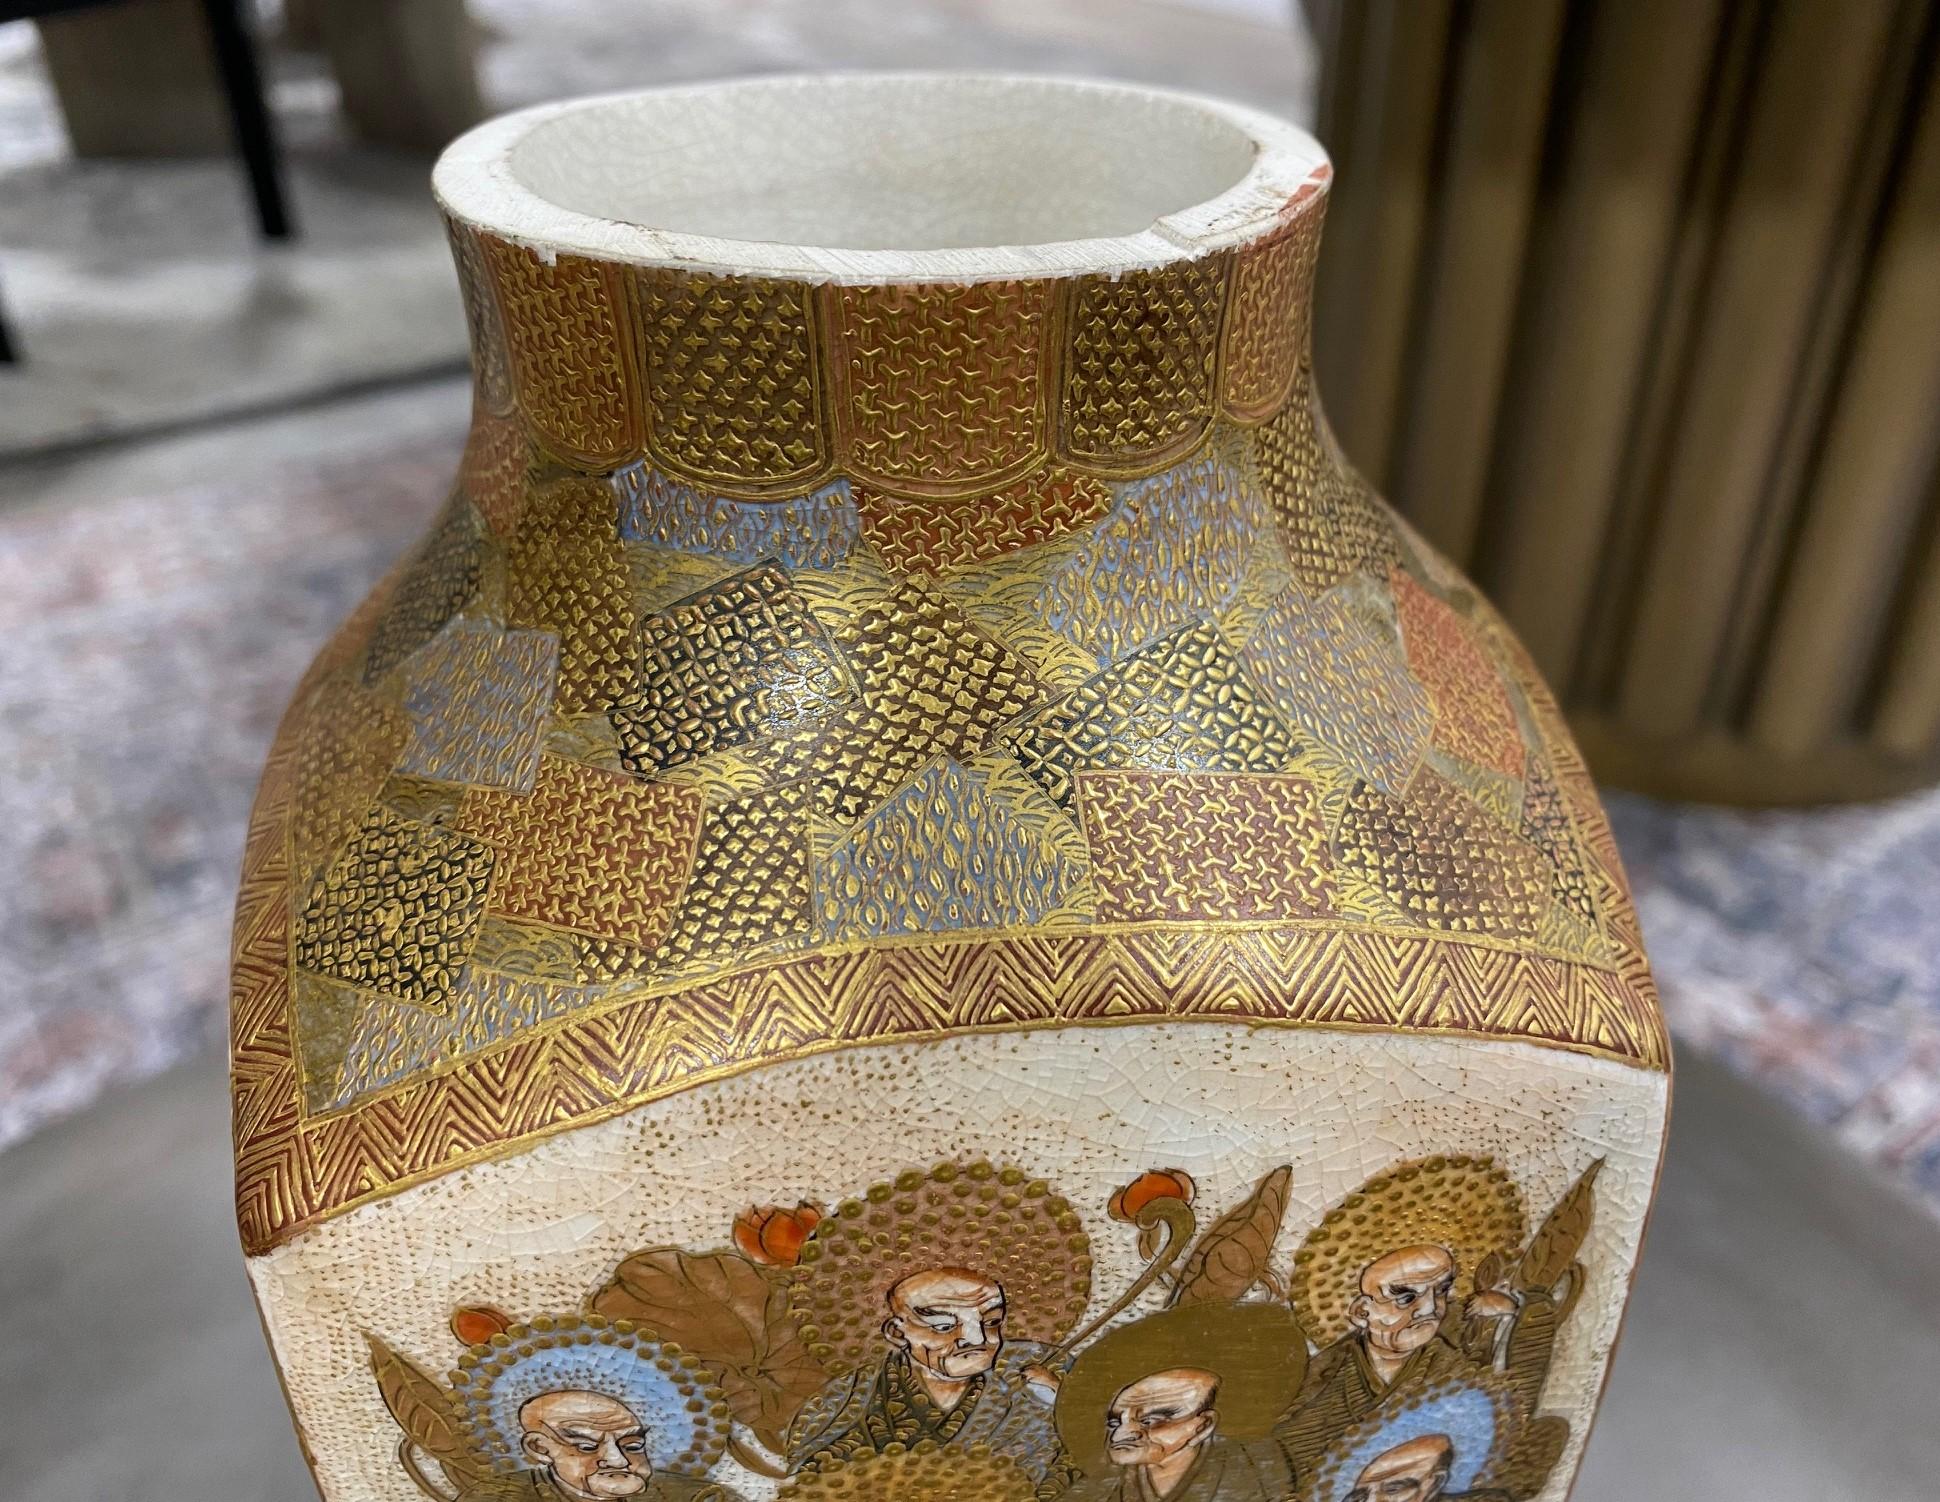 Japanese Antique Satsuma Pottery Buddhist Monks Vase with Shimazu Crest Mark For Sale 4